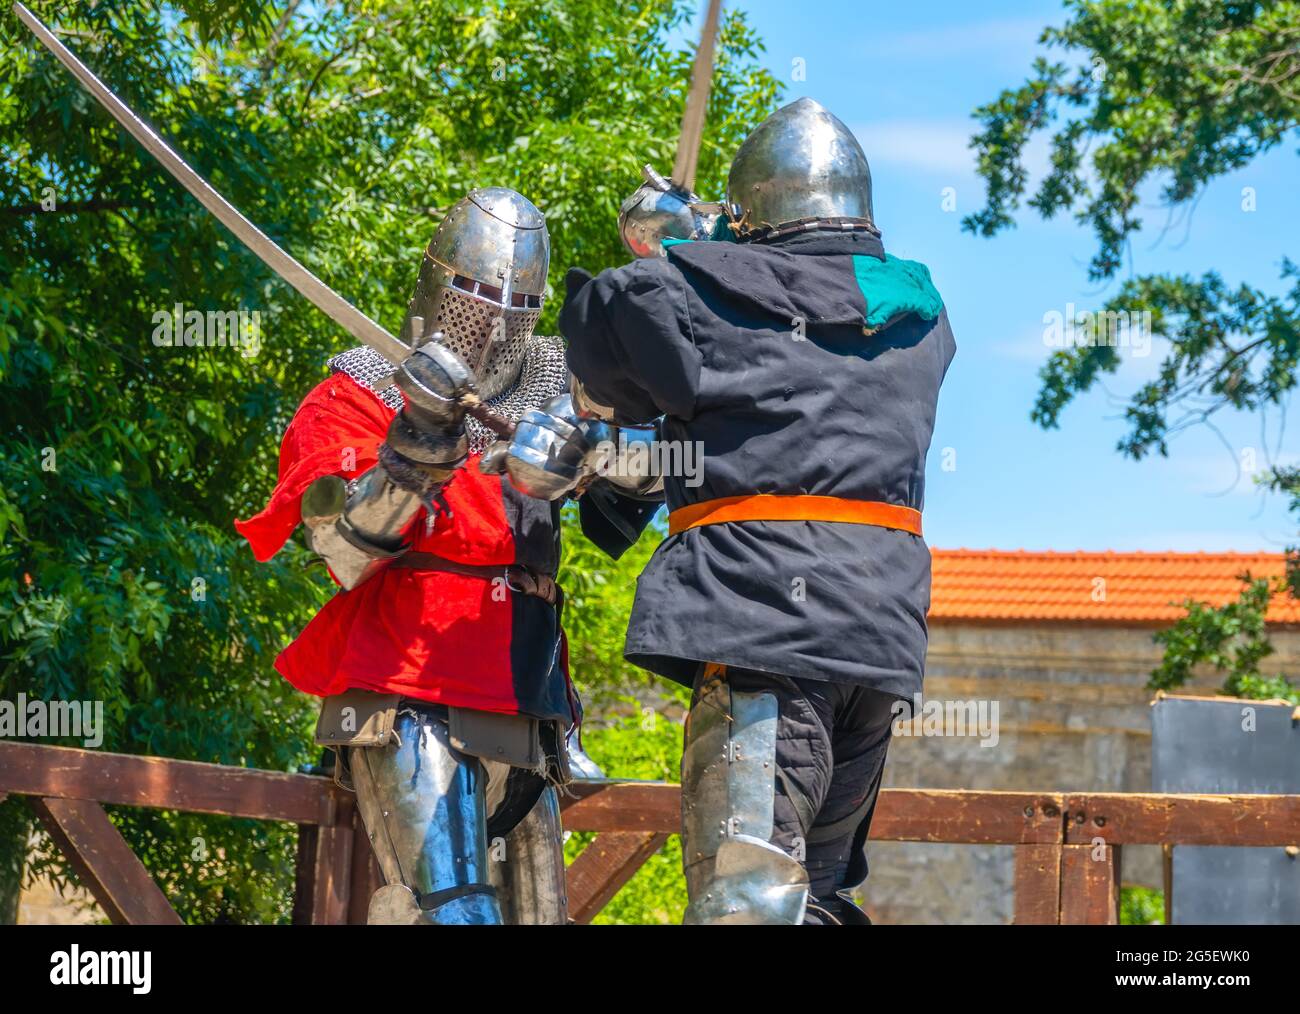 Jour d'été ensoleillé. Deux soldats médiévaux en armure et casques de fer se battent sur des épées Banque D'Images